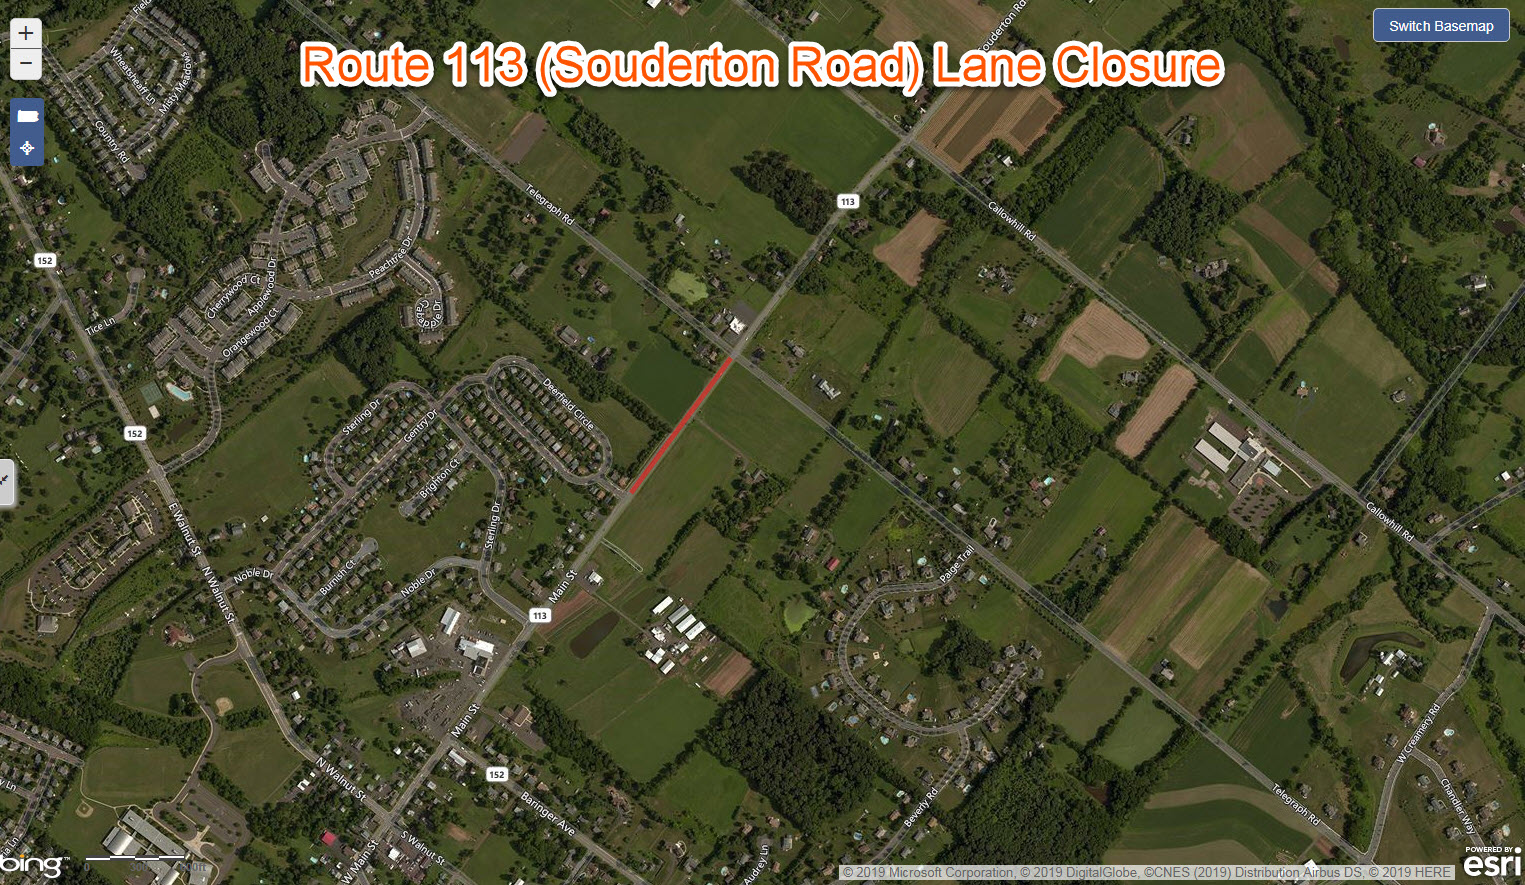 Route 113 Lane Closure Hilltown Township.jpg